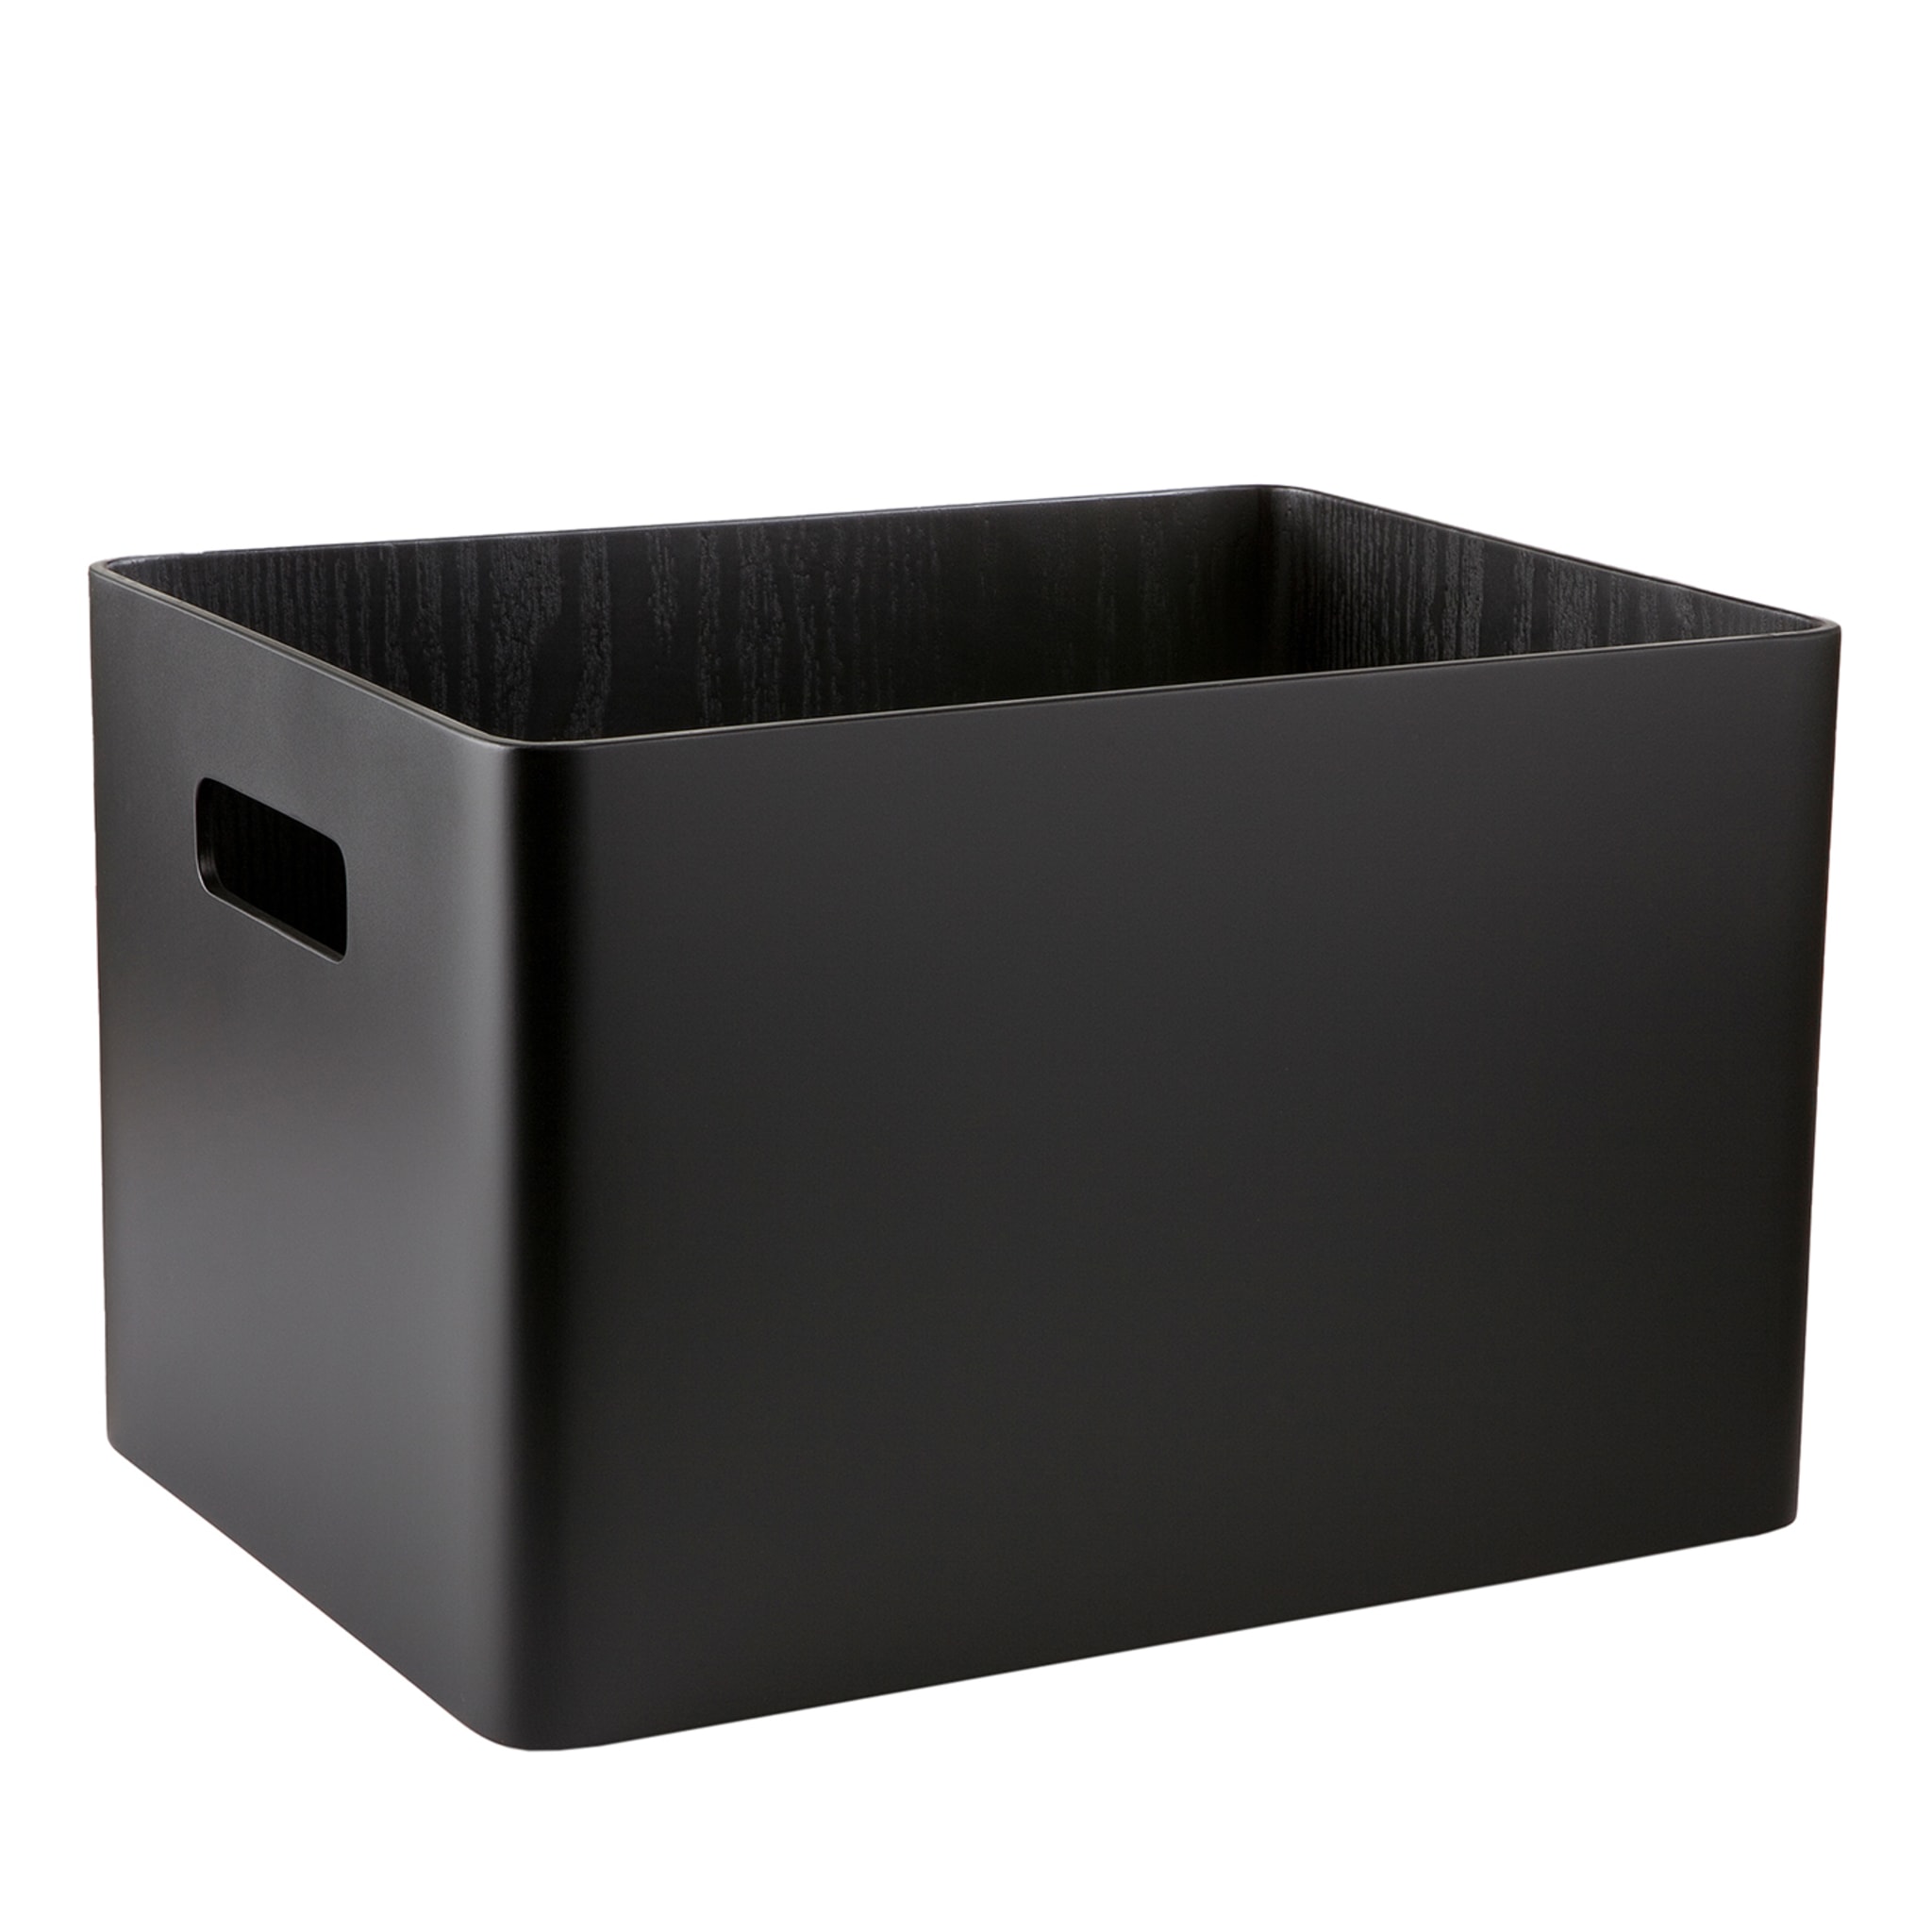 Arigatoe Medium Black Container - Main view